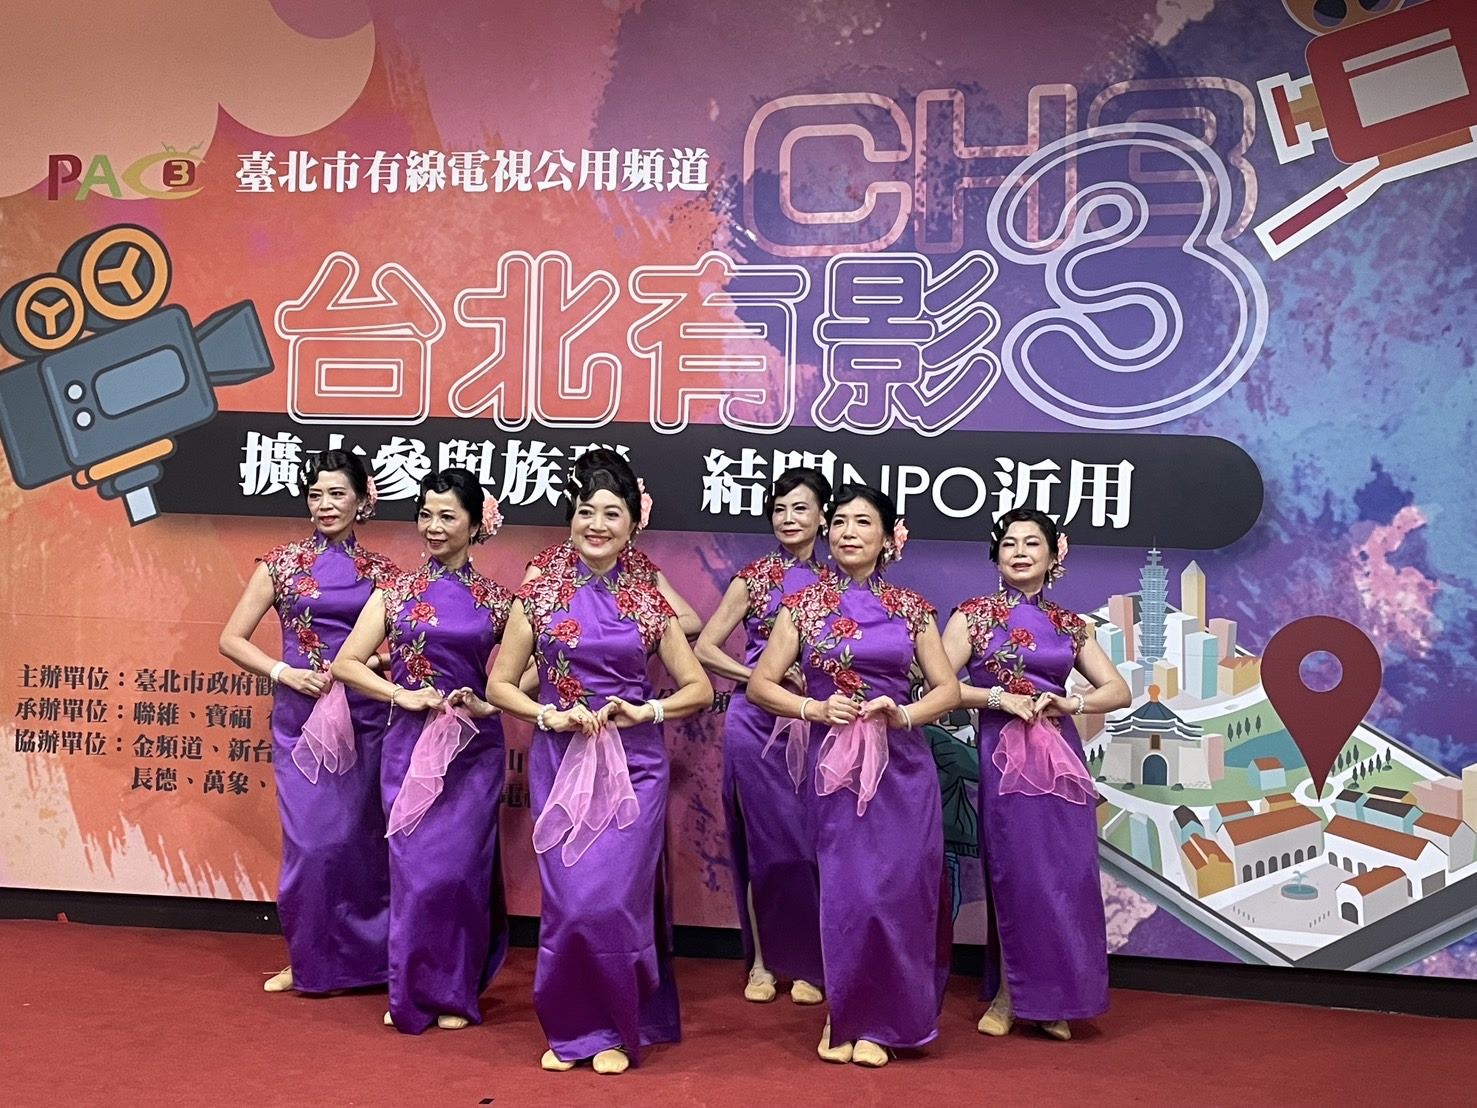 中正社區大學師生為「台北有影3」活動帶來曼妙舞蹈。